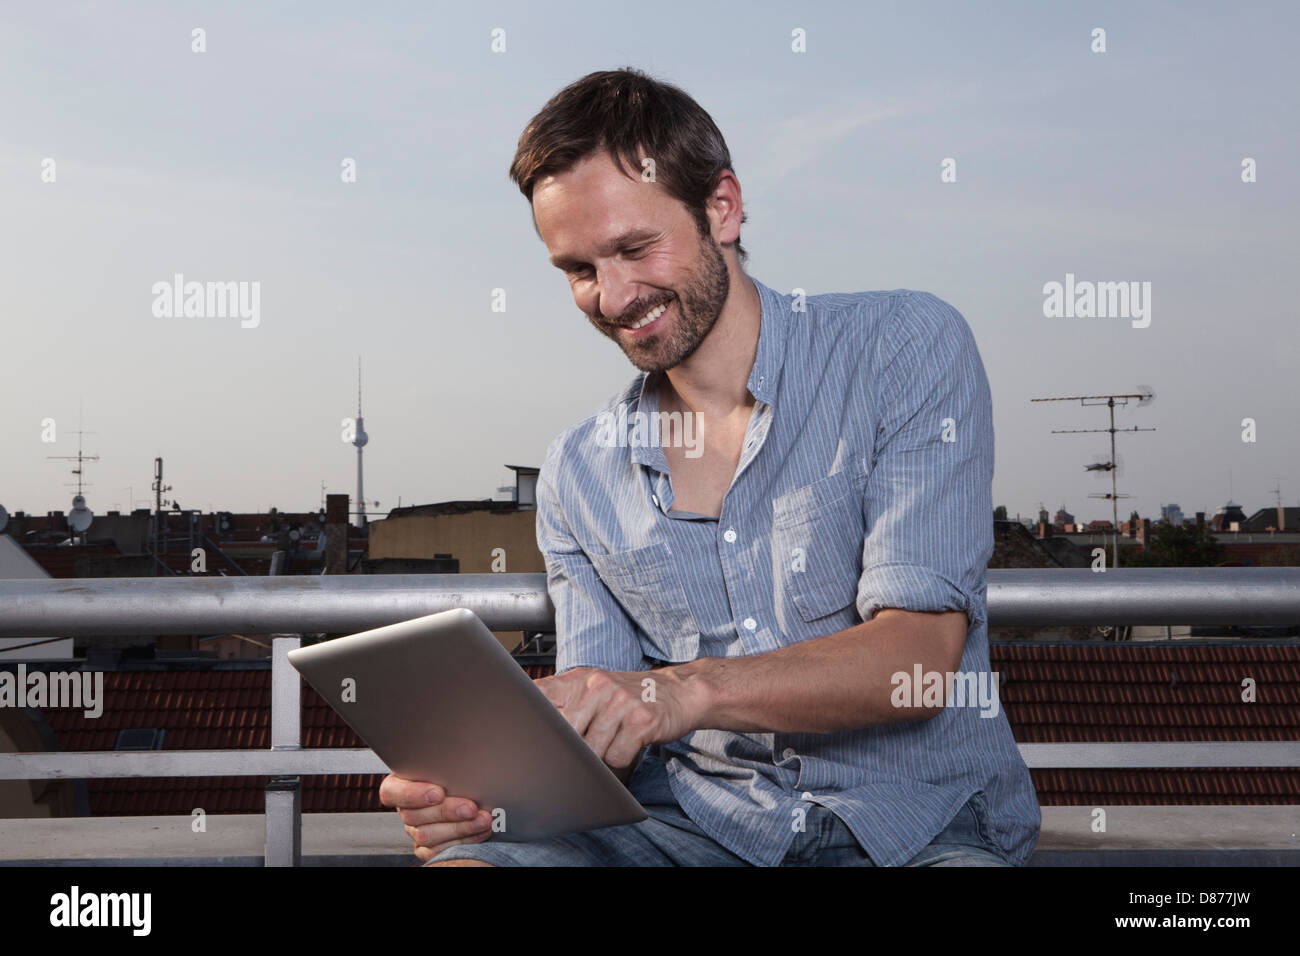 Germania, Berlino, uomo con tavoletta digitale sulla terrazza sul tetto, sorridente Foto Stock